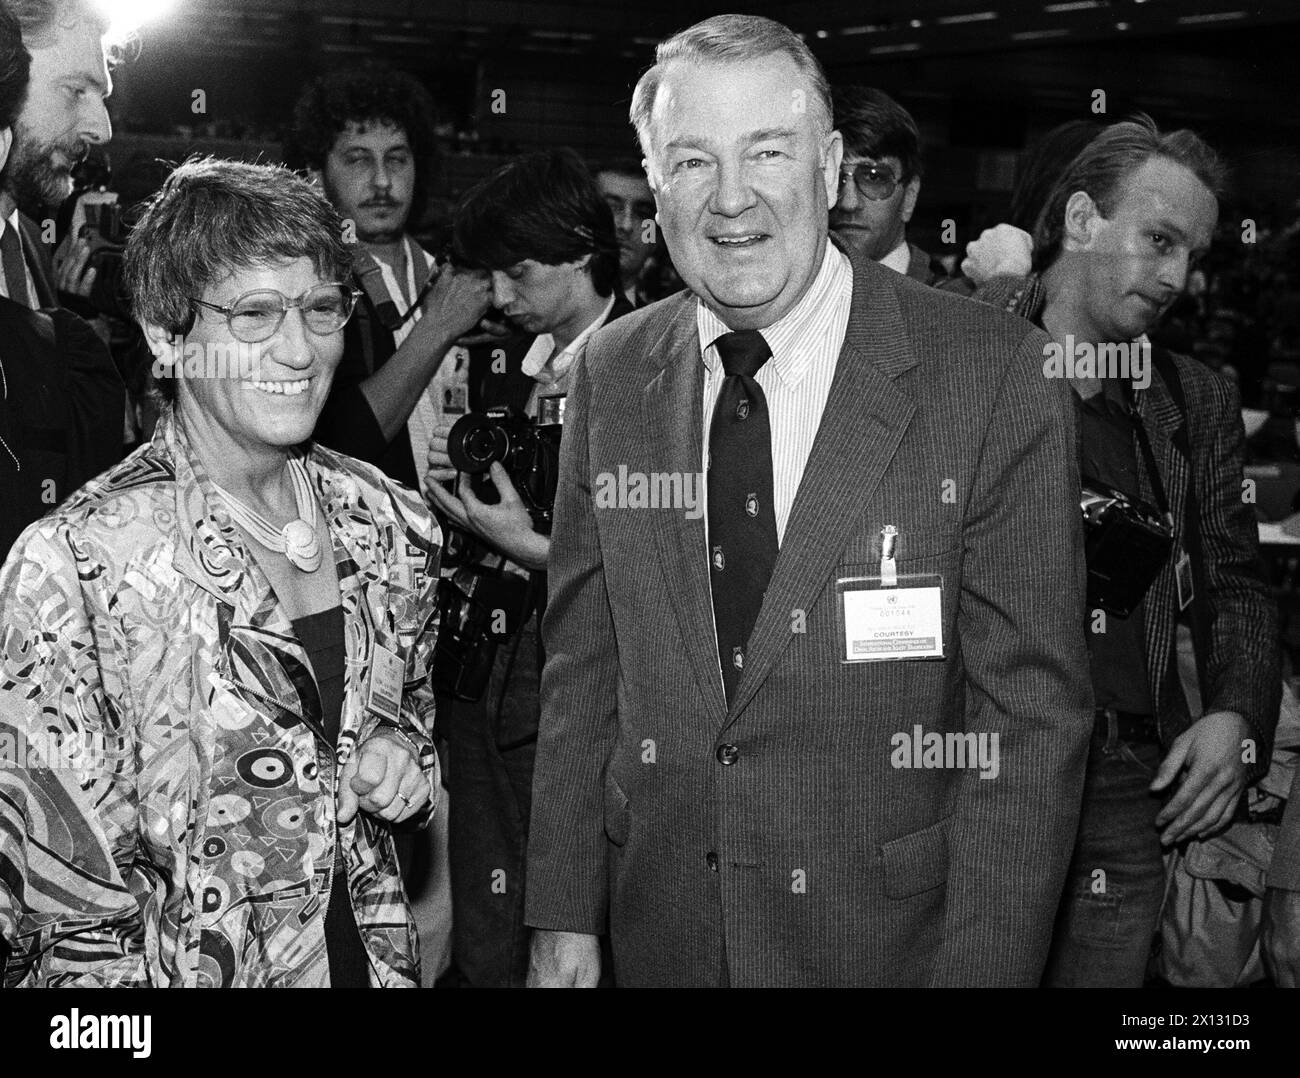 Das Foto wurde am 17. Juni 1987 anlässlich der UN-Drogenkonferenz in Wien aufgenommen und zeigt den US-Justizminister Edwin Meese und die Bundesgesundheitsministerin Rita Suessmuth (l.). - 19870617 PD0009 - Rechteinfo: Rechte verwaltet (RM) Stockfoto